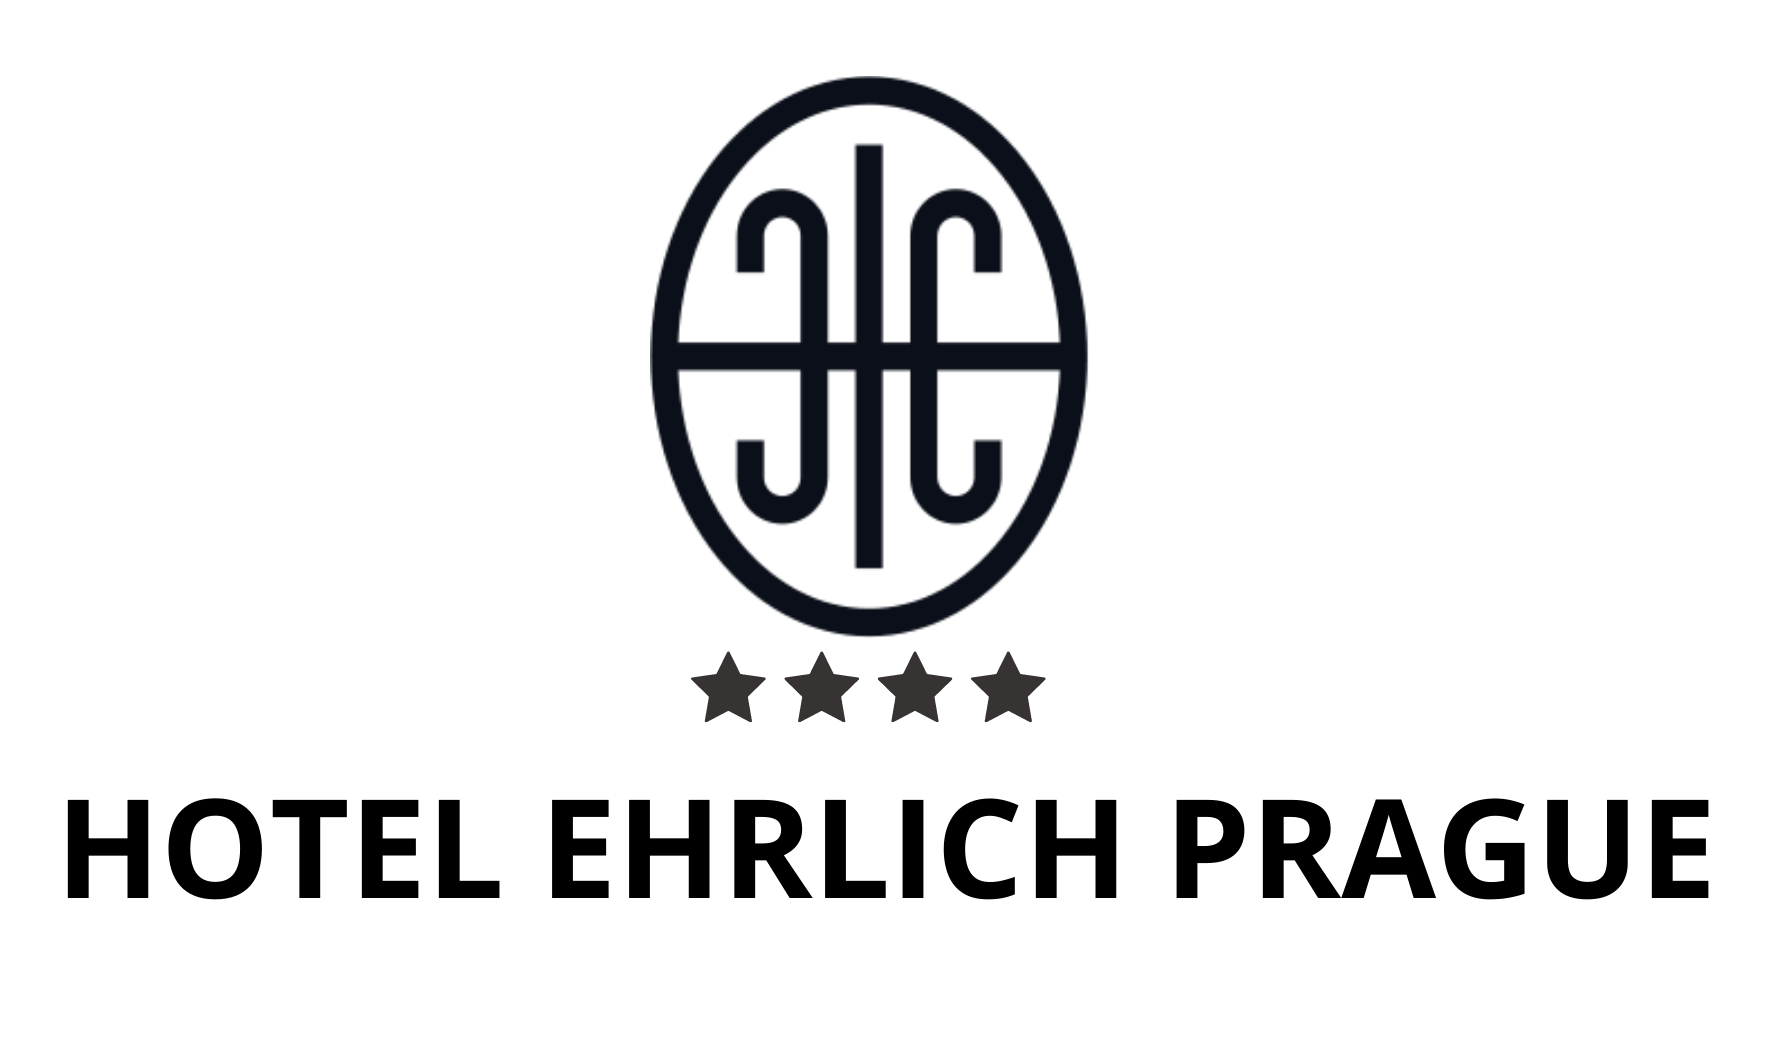 Hotel Ehrlich Prague - kontaktujte nás